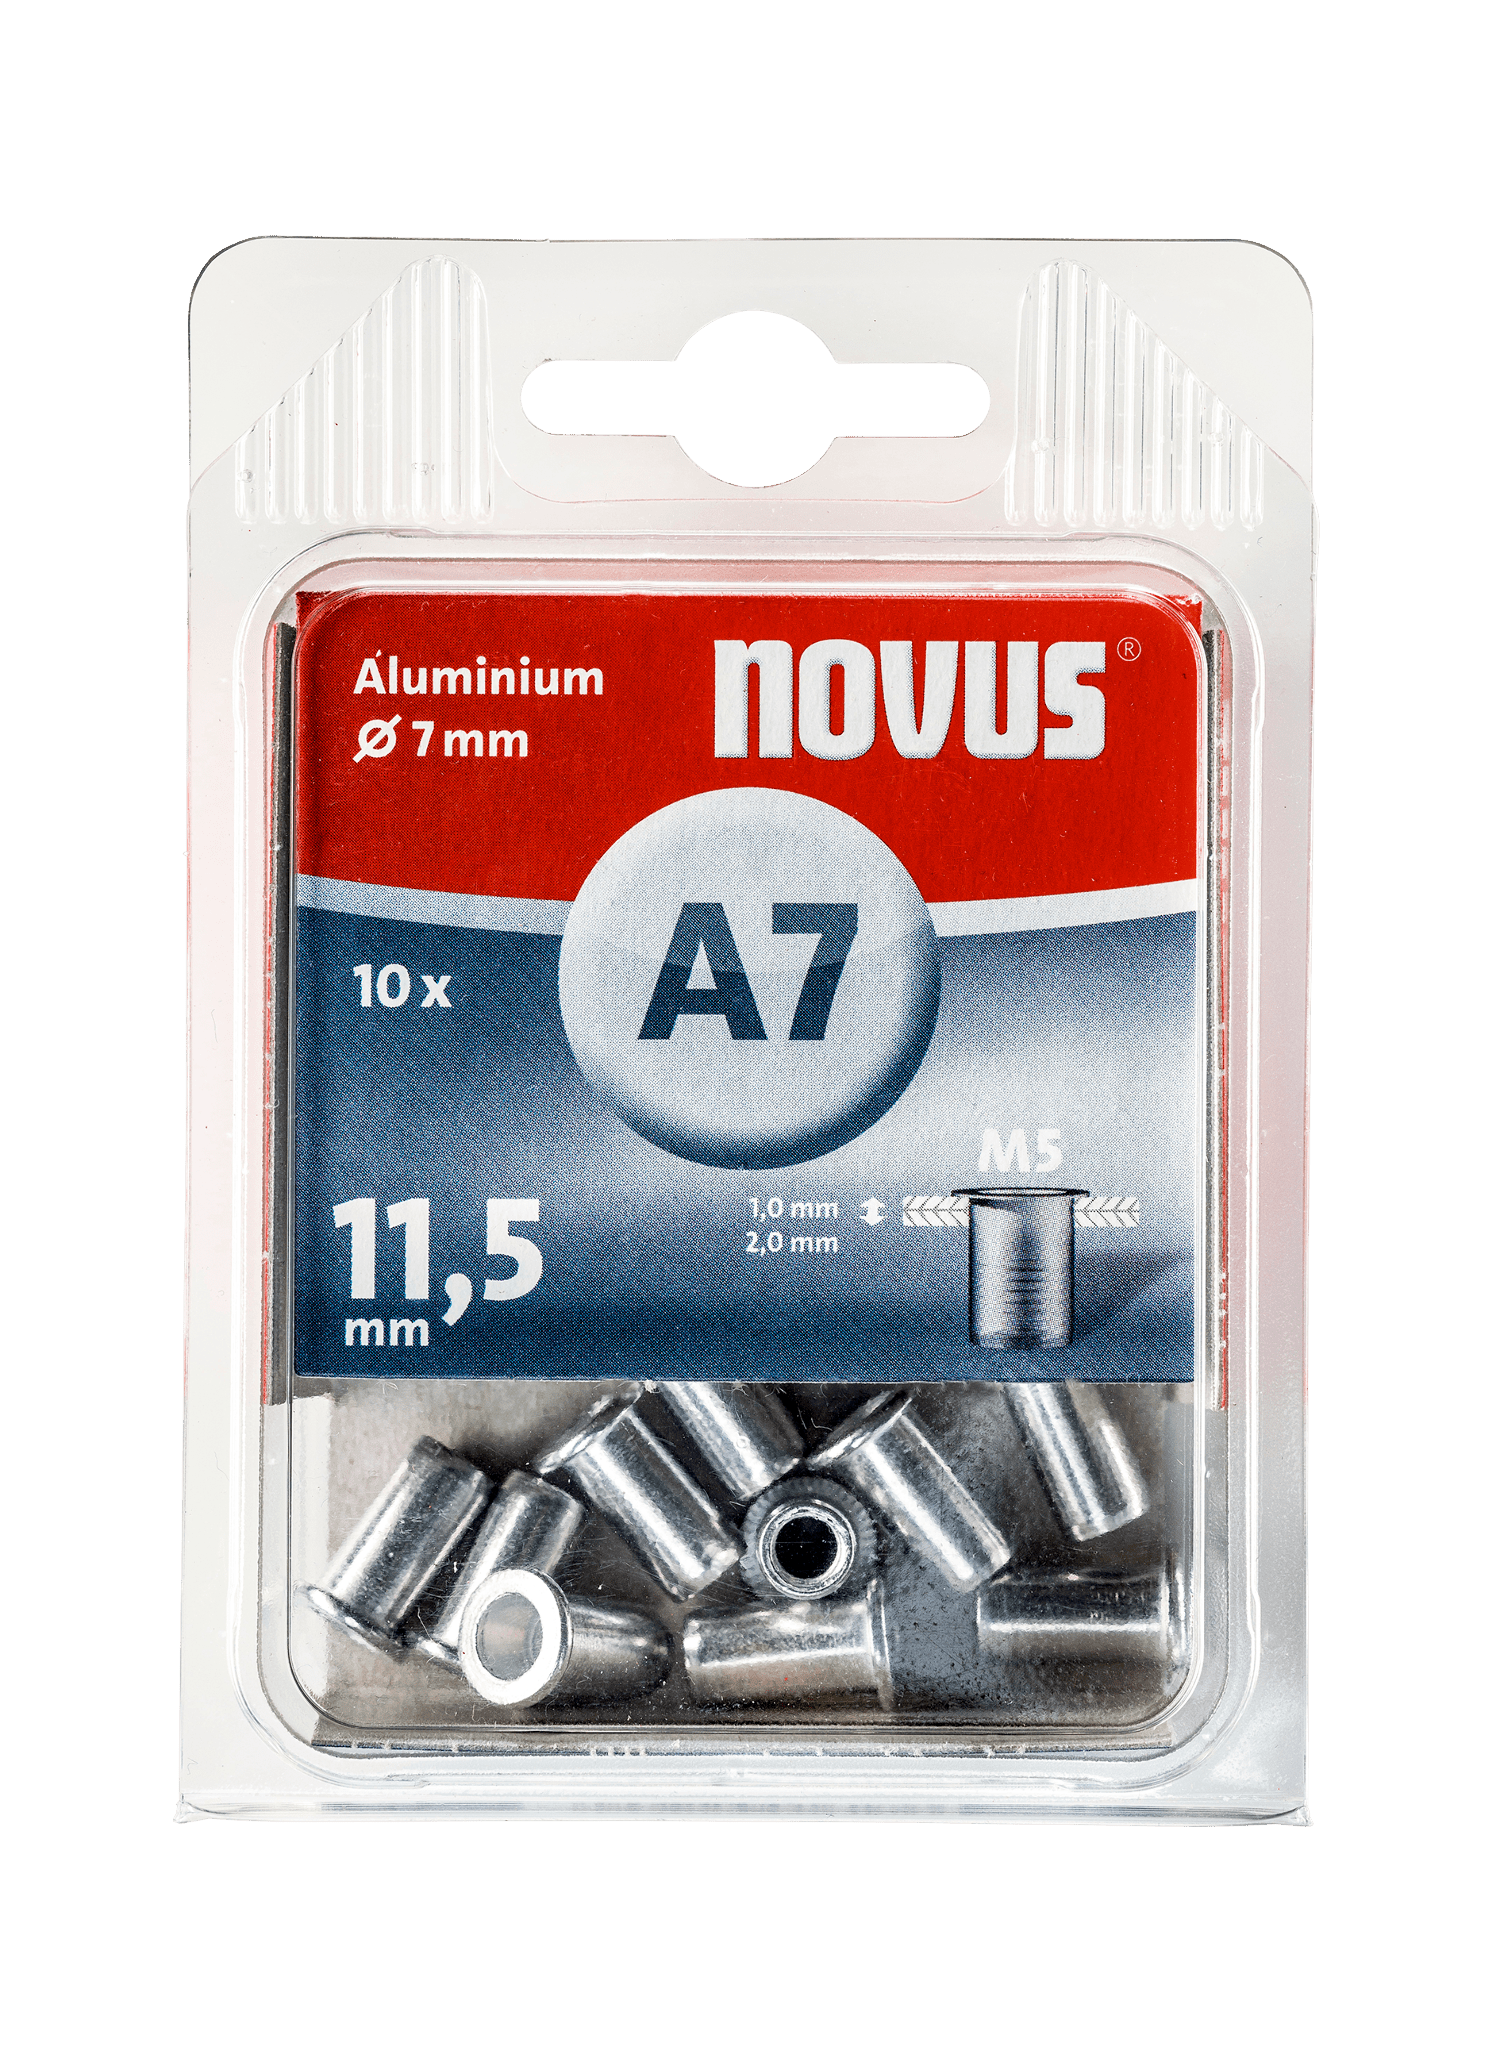 NOVUS Aluminium rivet nut Type A7 M5